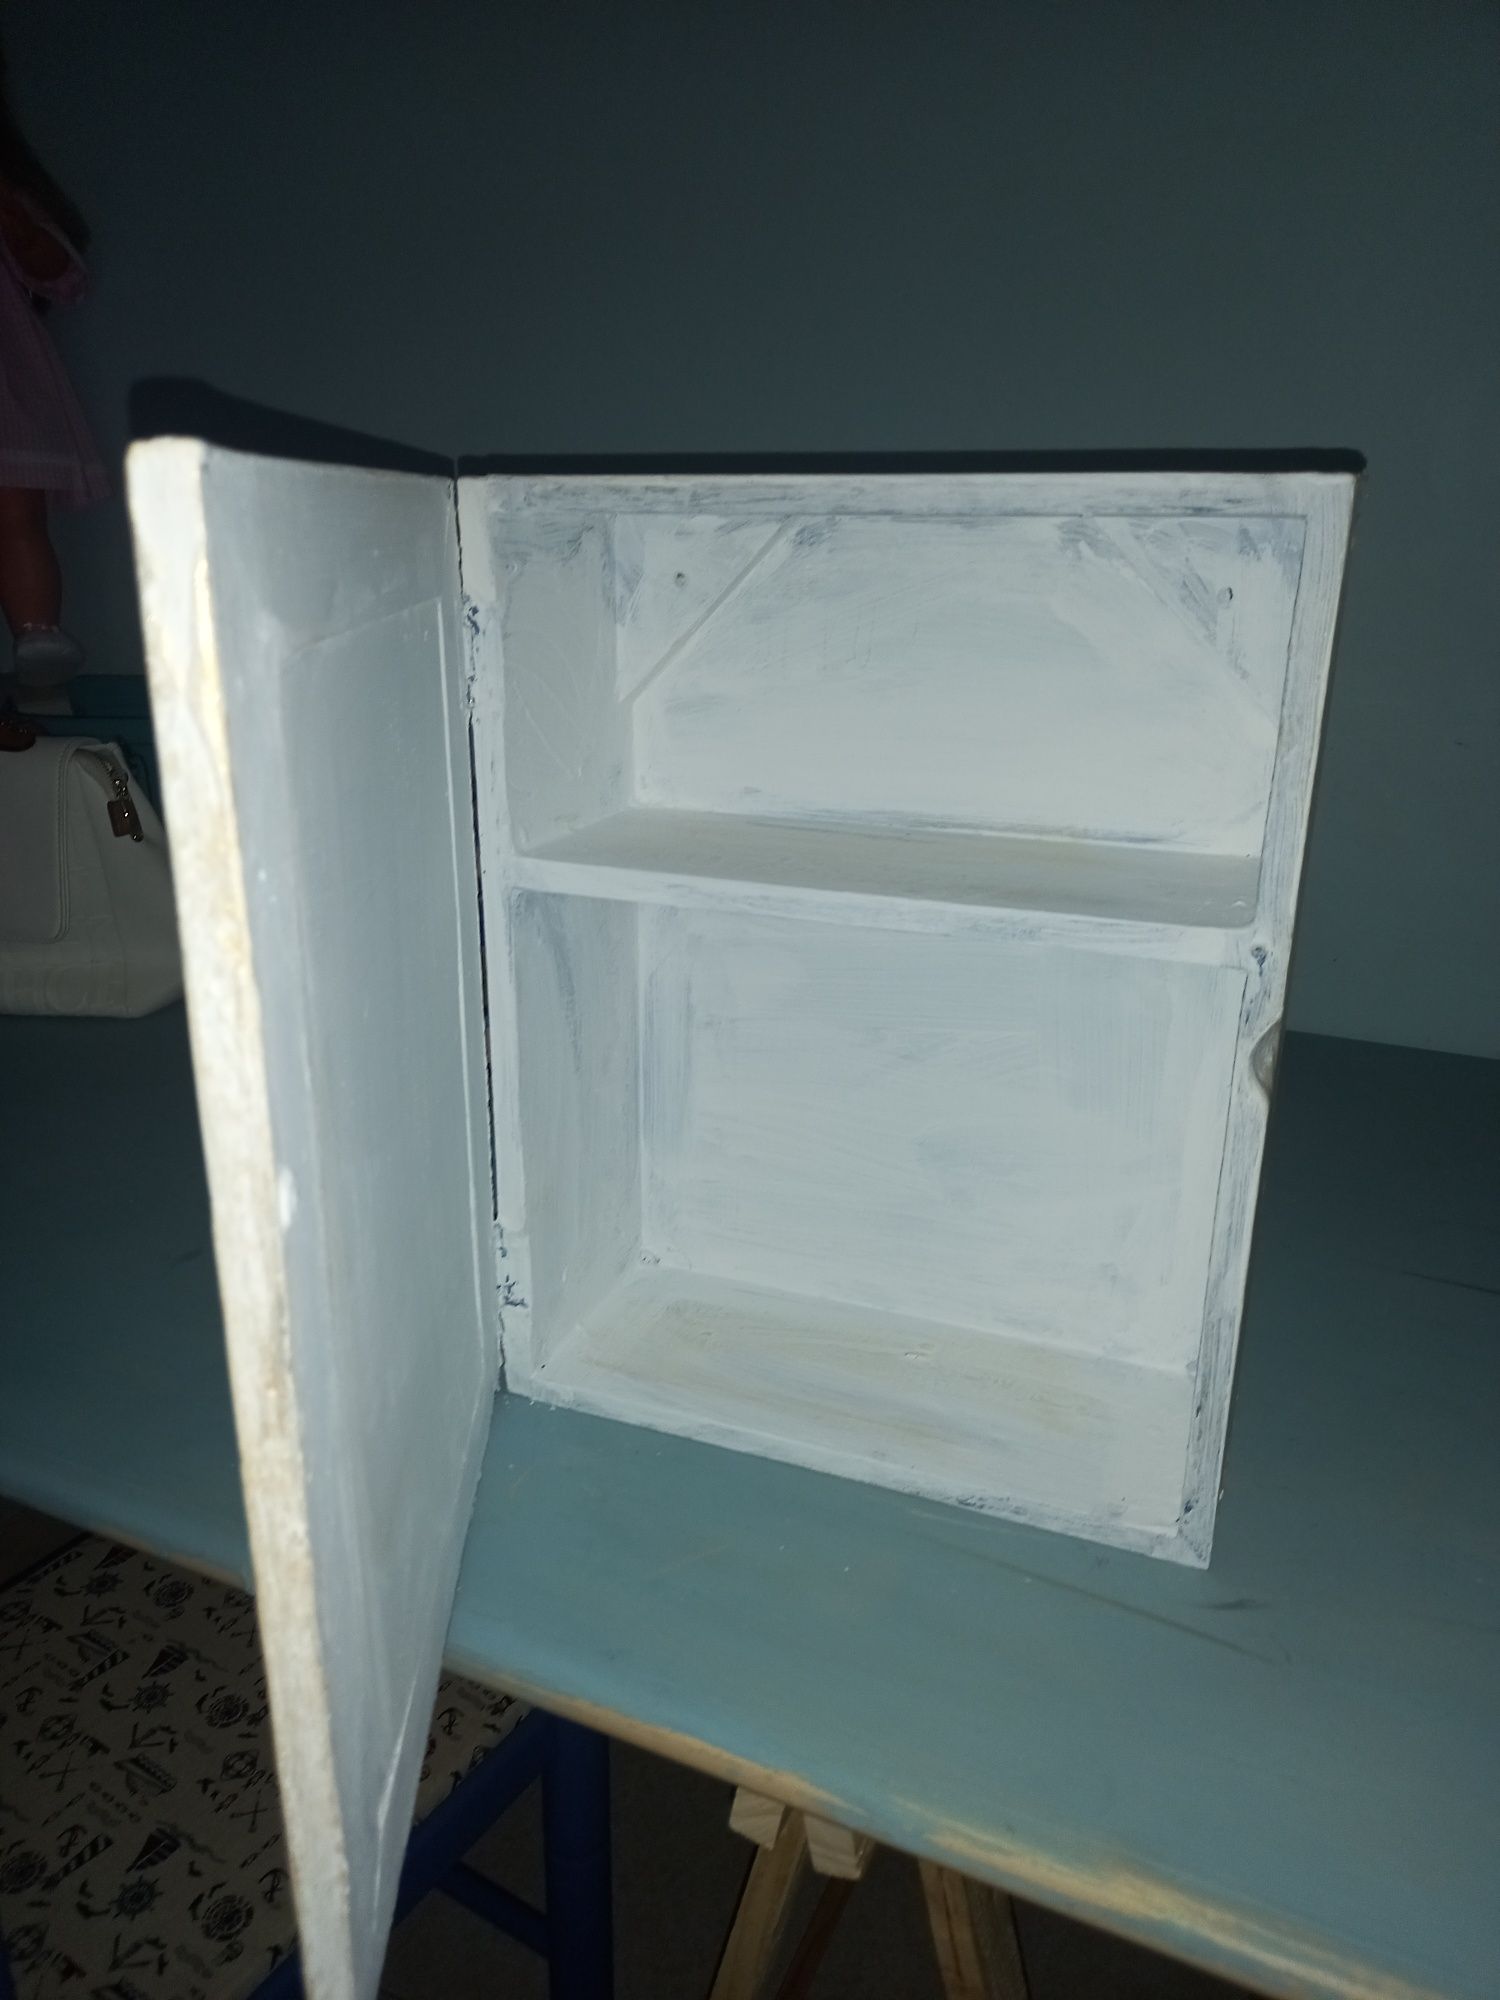 Móvel/caixa/expositor de parede,em madeira.
38 x29x12